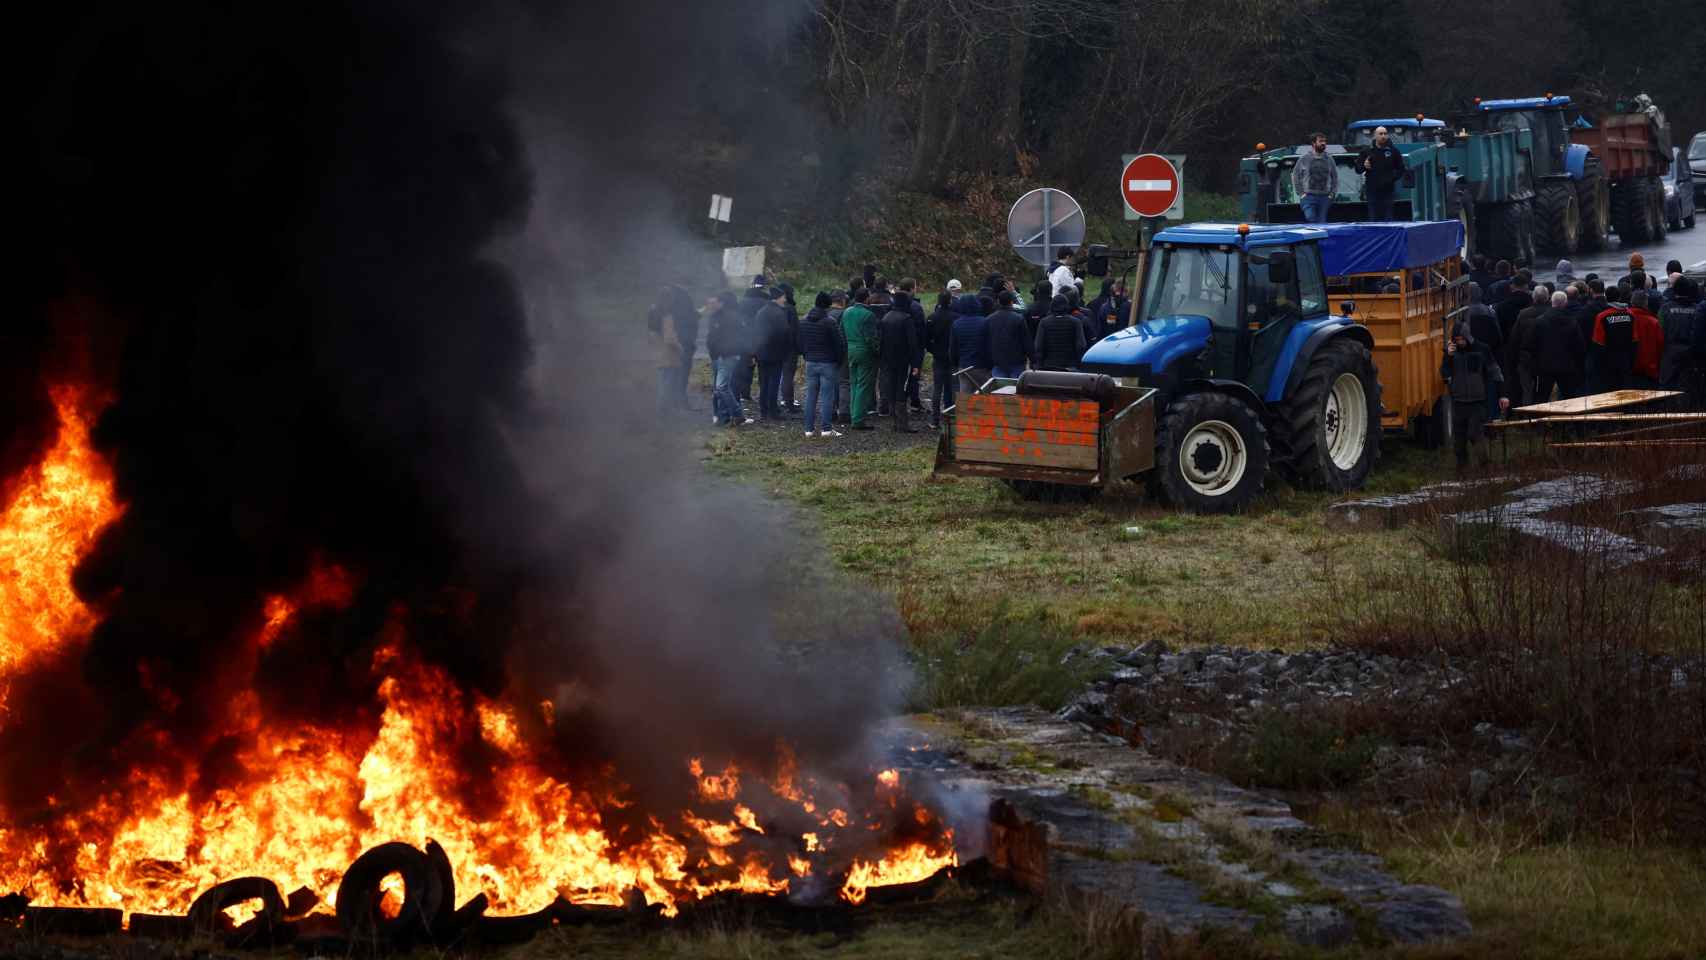 Continúan las protestas de los agricultores a nivel nacional en Francia.